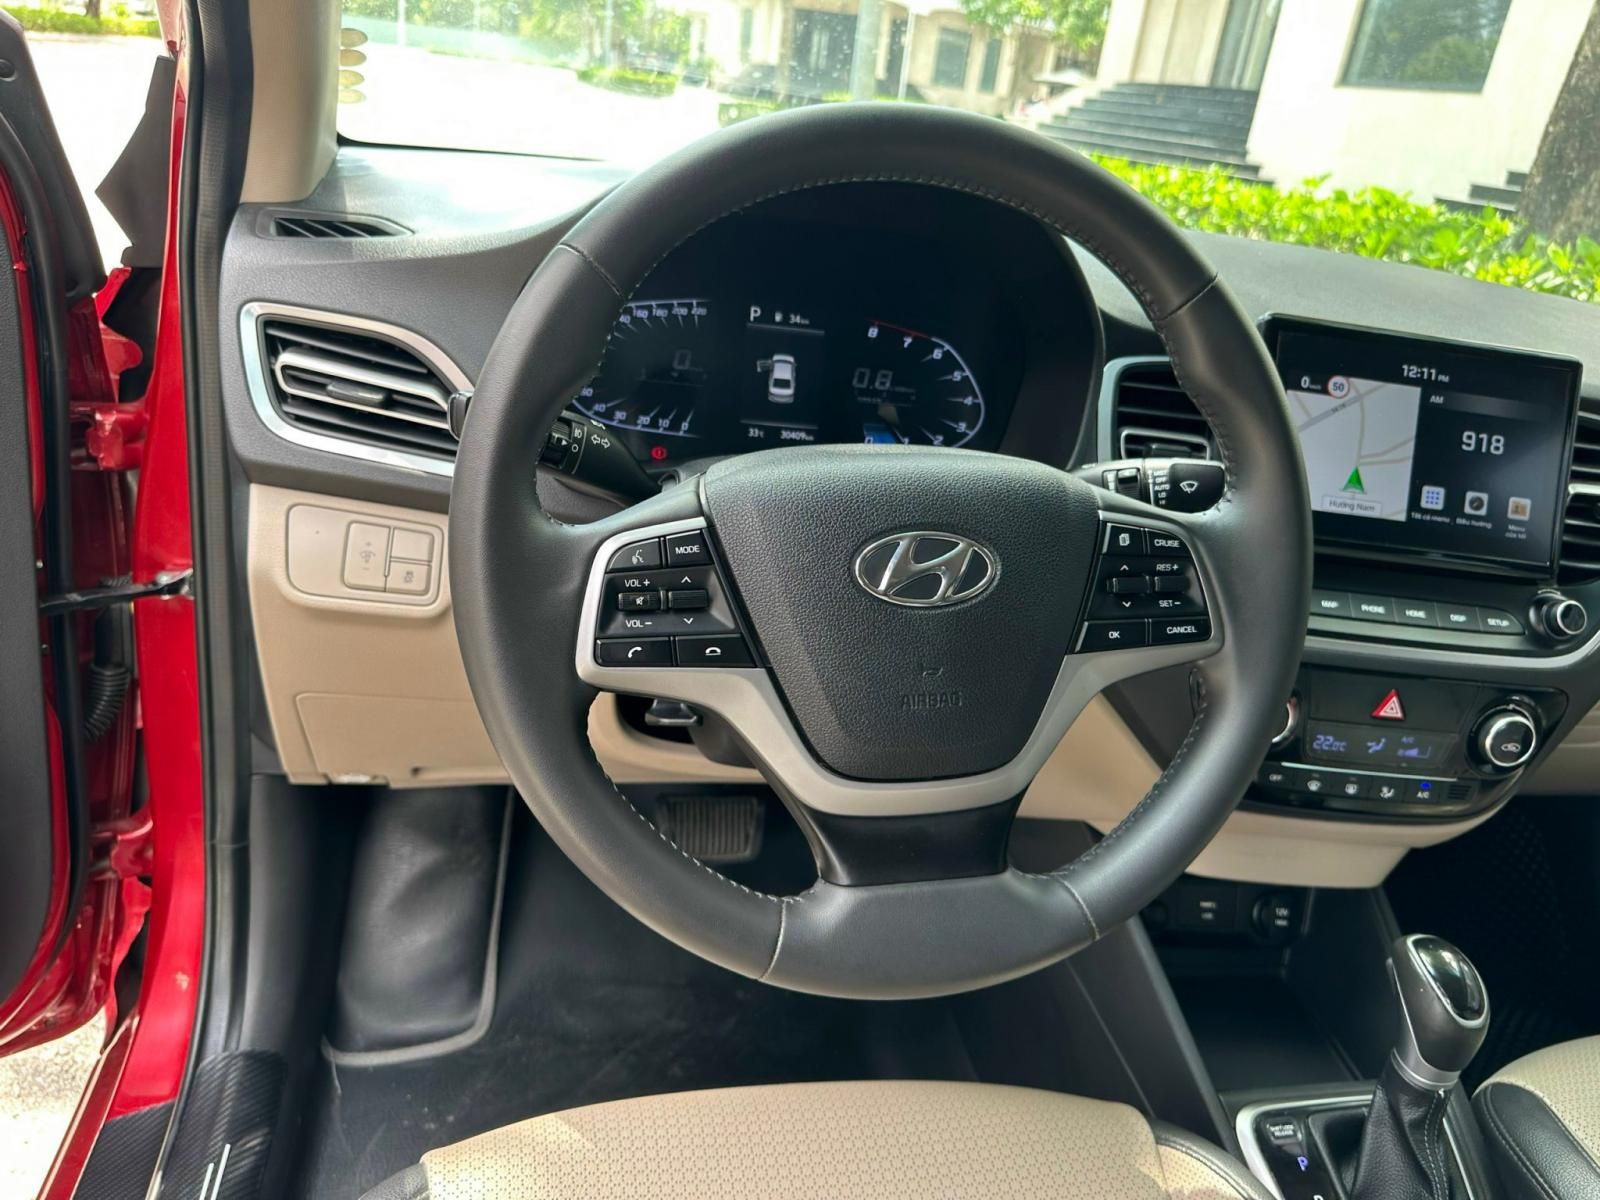 Hyundai Accent 2021 - Màu đỏ, biển số tỉnh